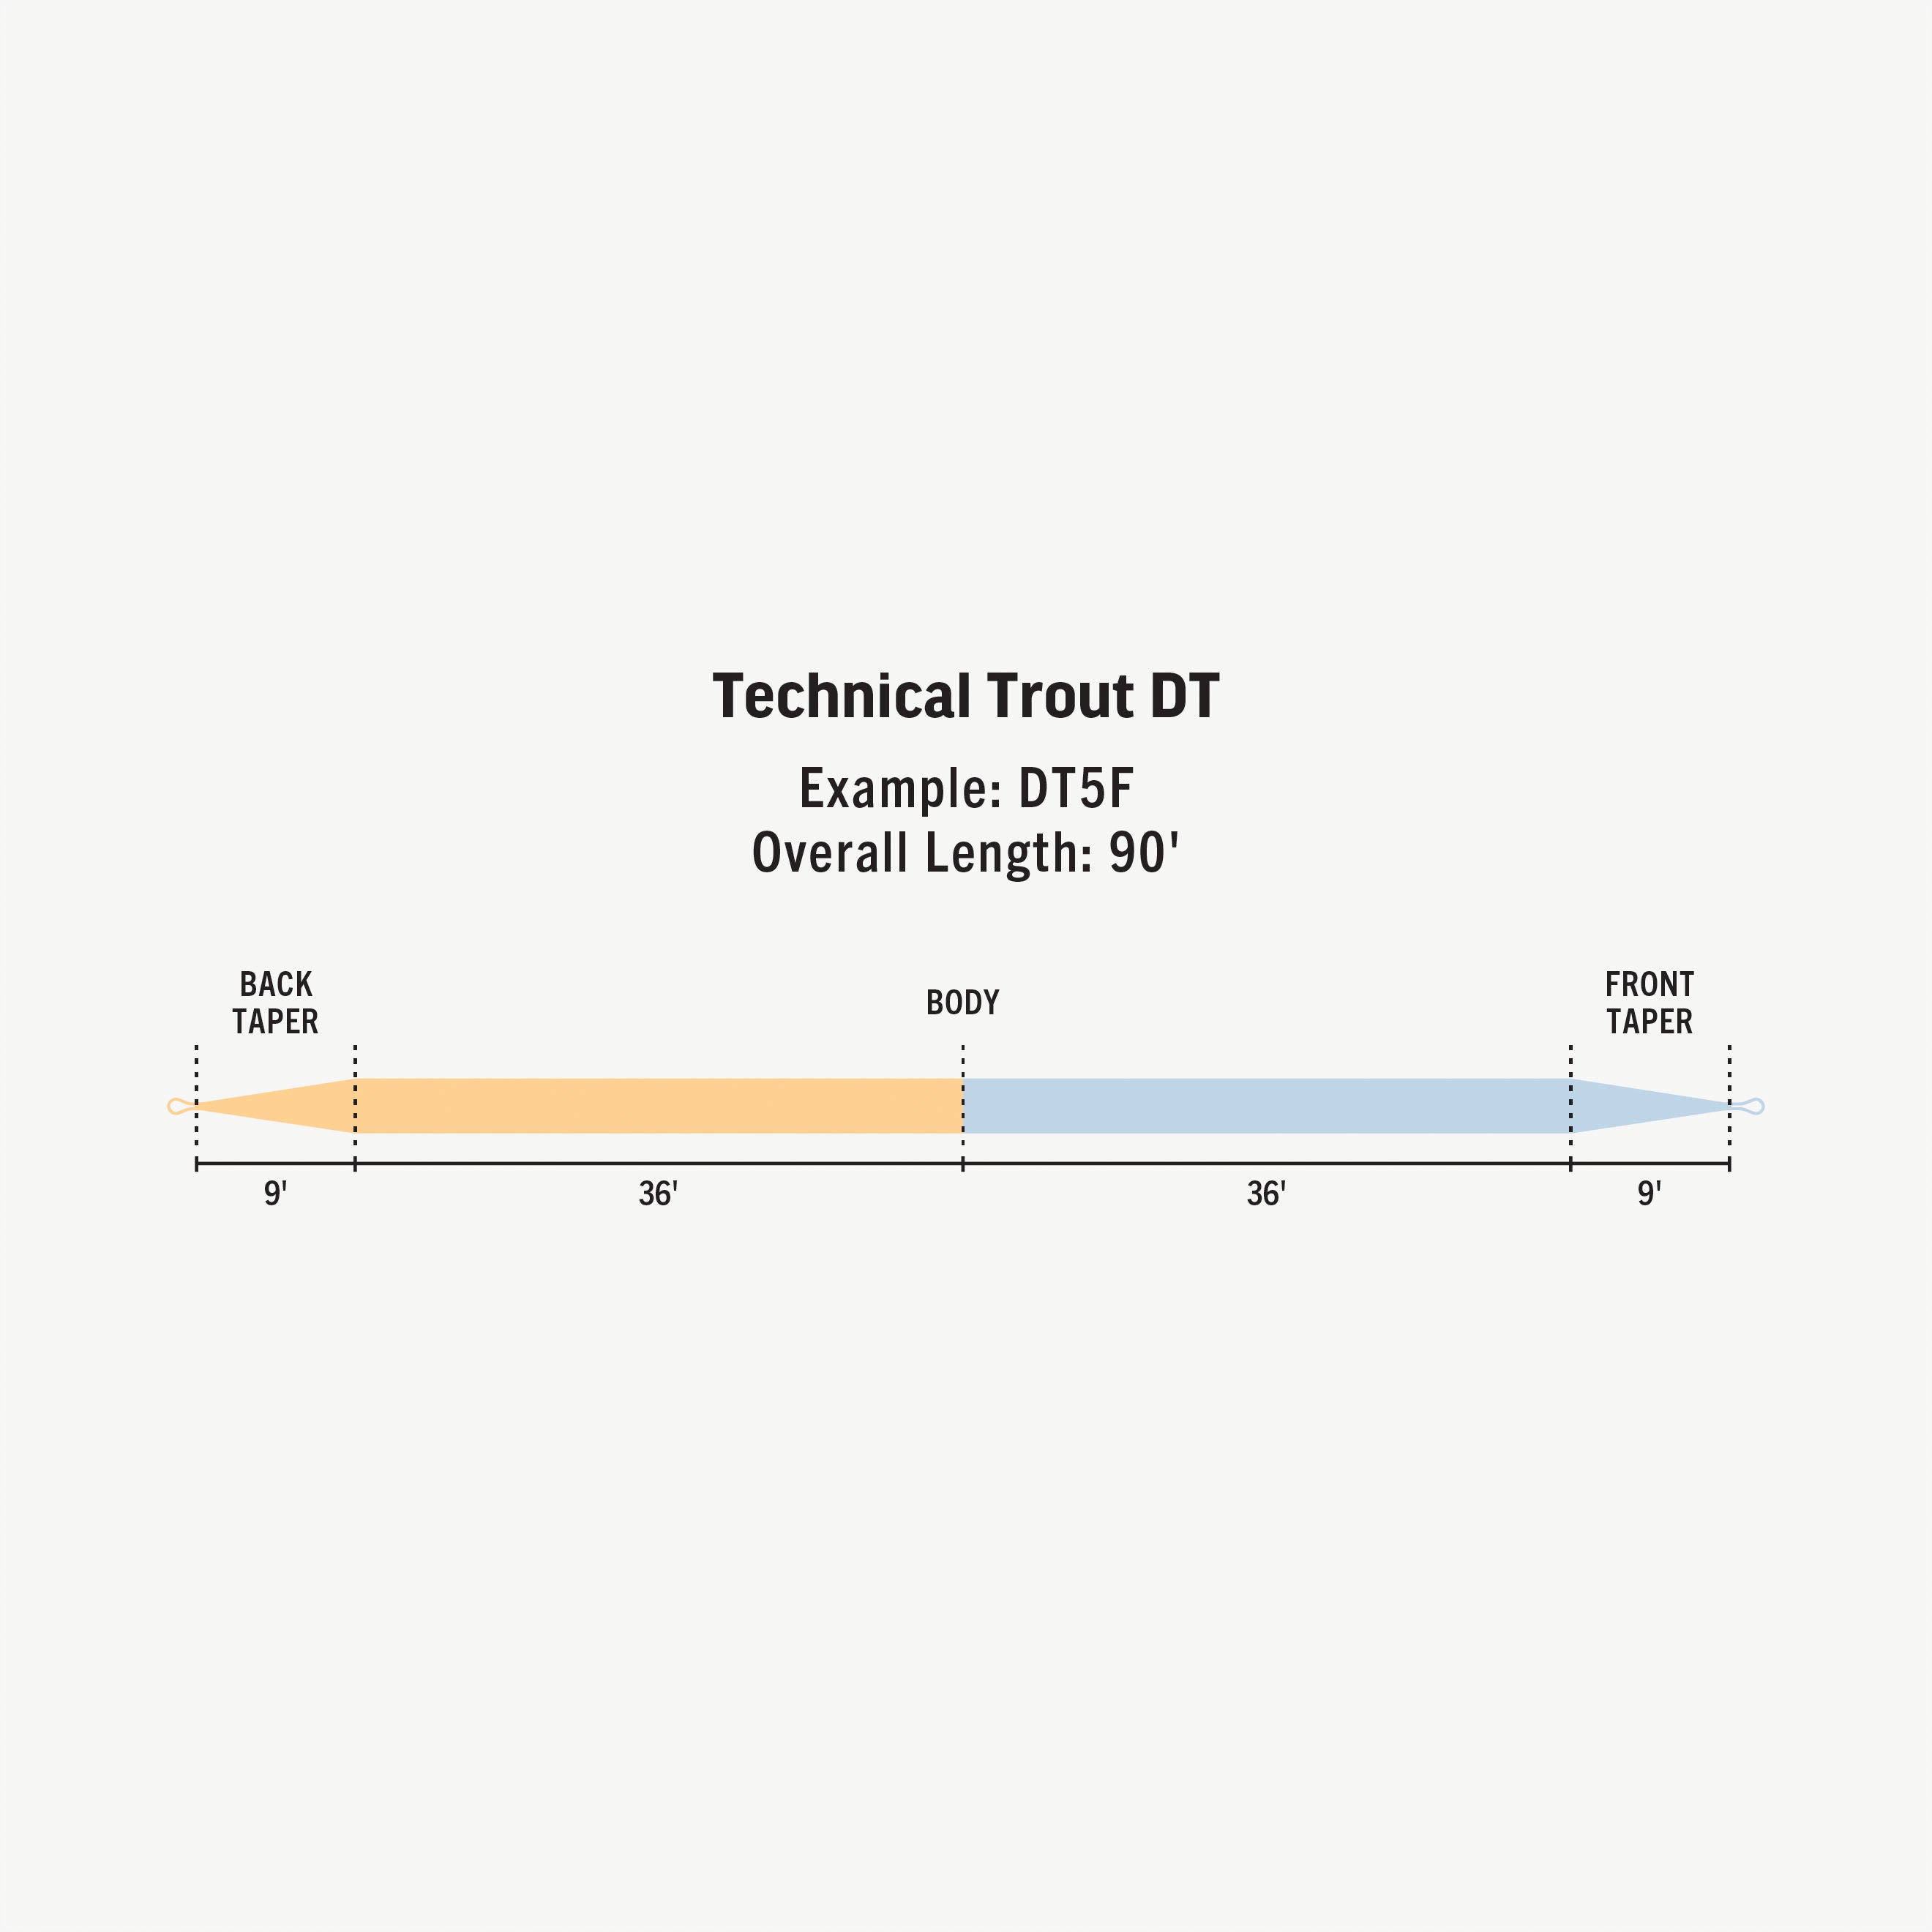 Technical Trout DT